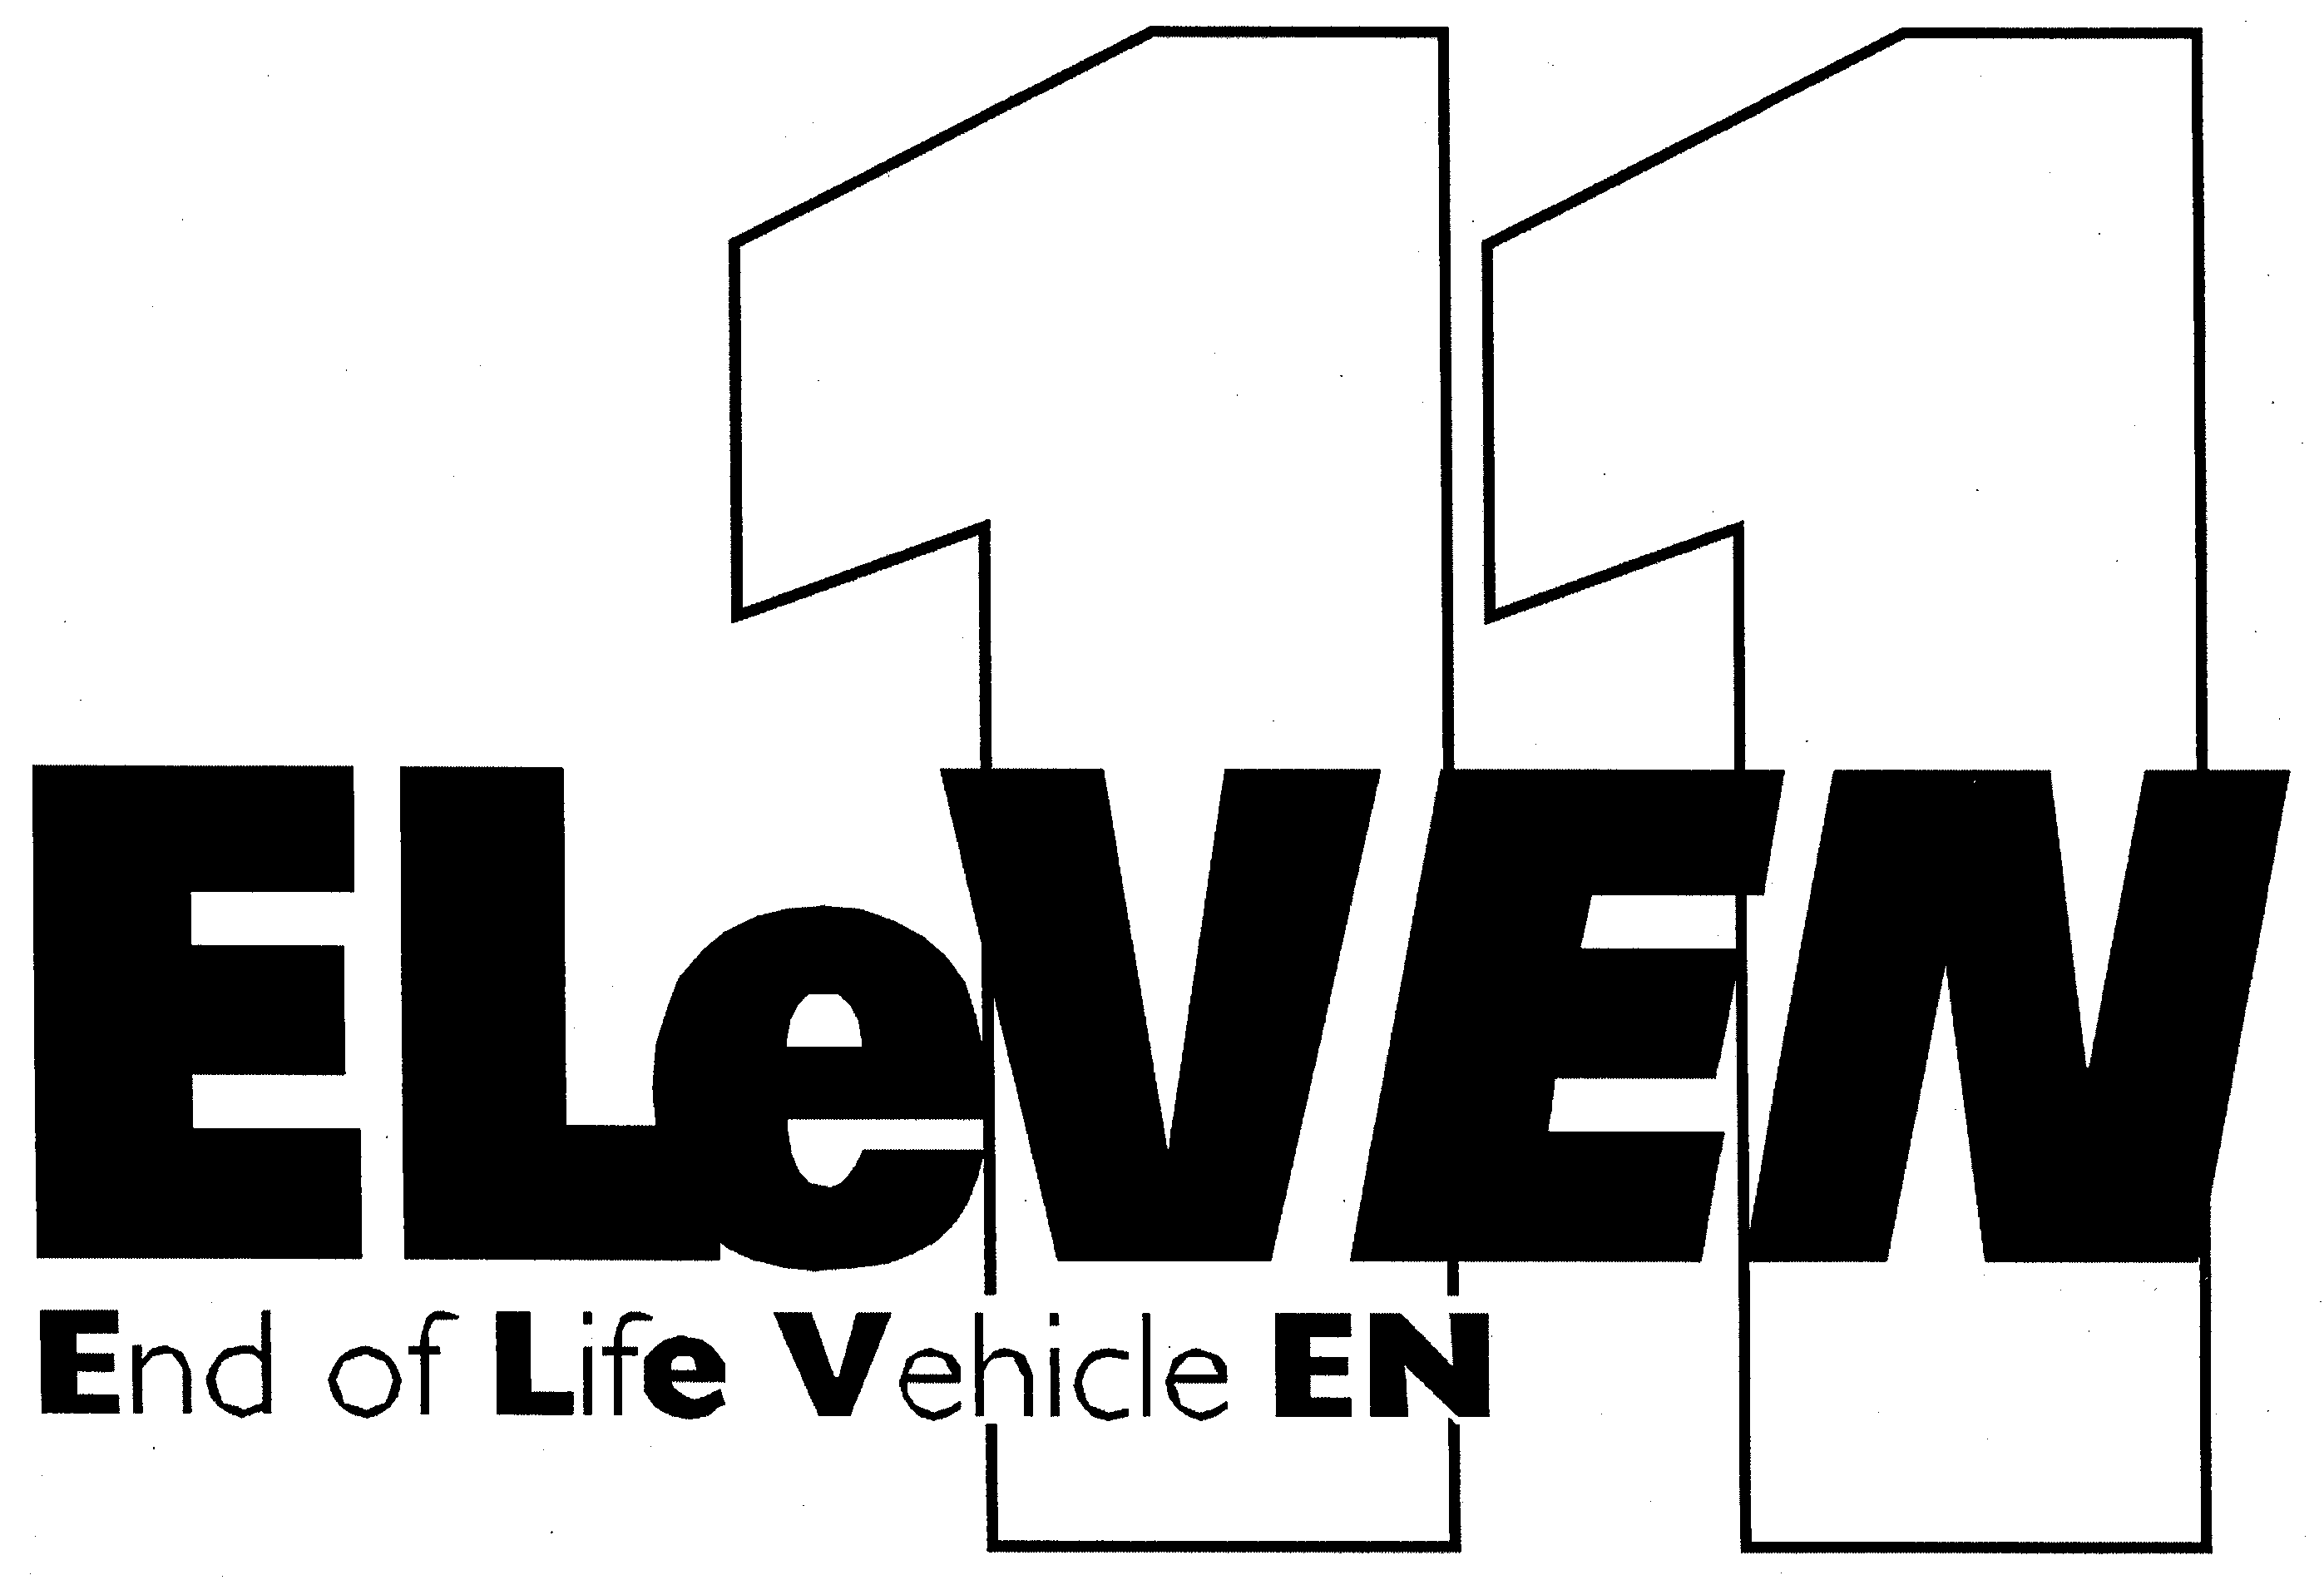  ELEVEN 11 END OF LIFE VEHICLE EN